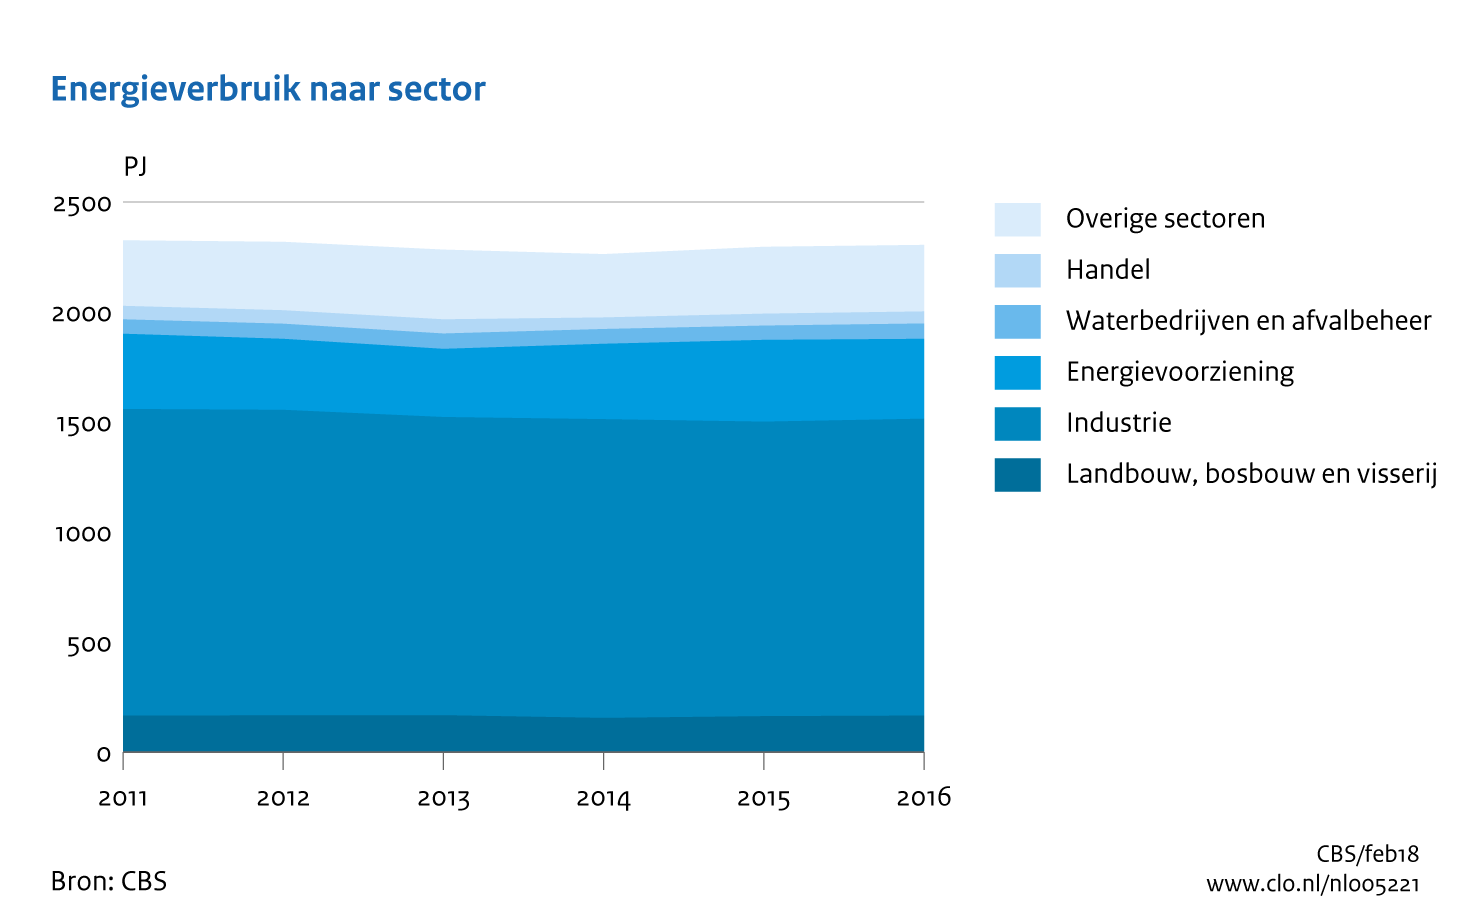 Figuur Tijdreeks 2011-2016 energieverbruik per sector. In de rest van de tekst wordt deze figuur uitgebreider uitgelegd.